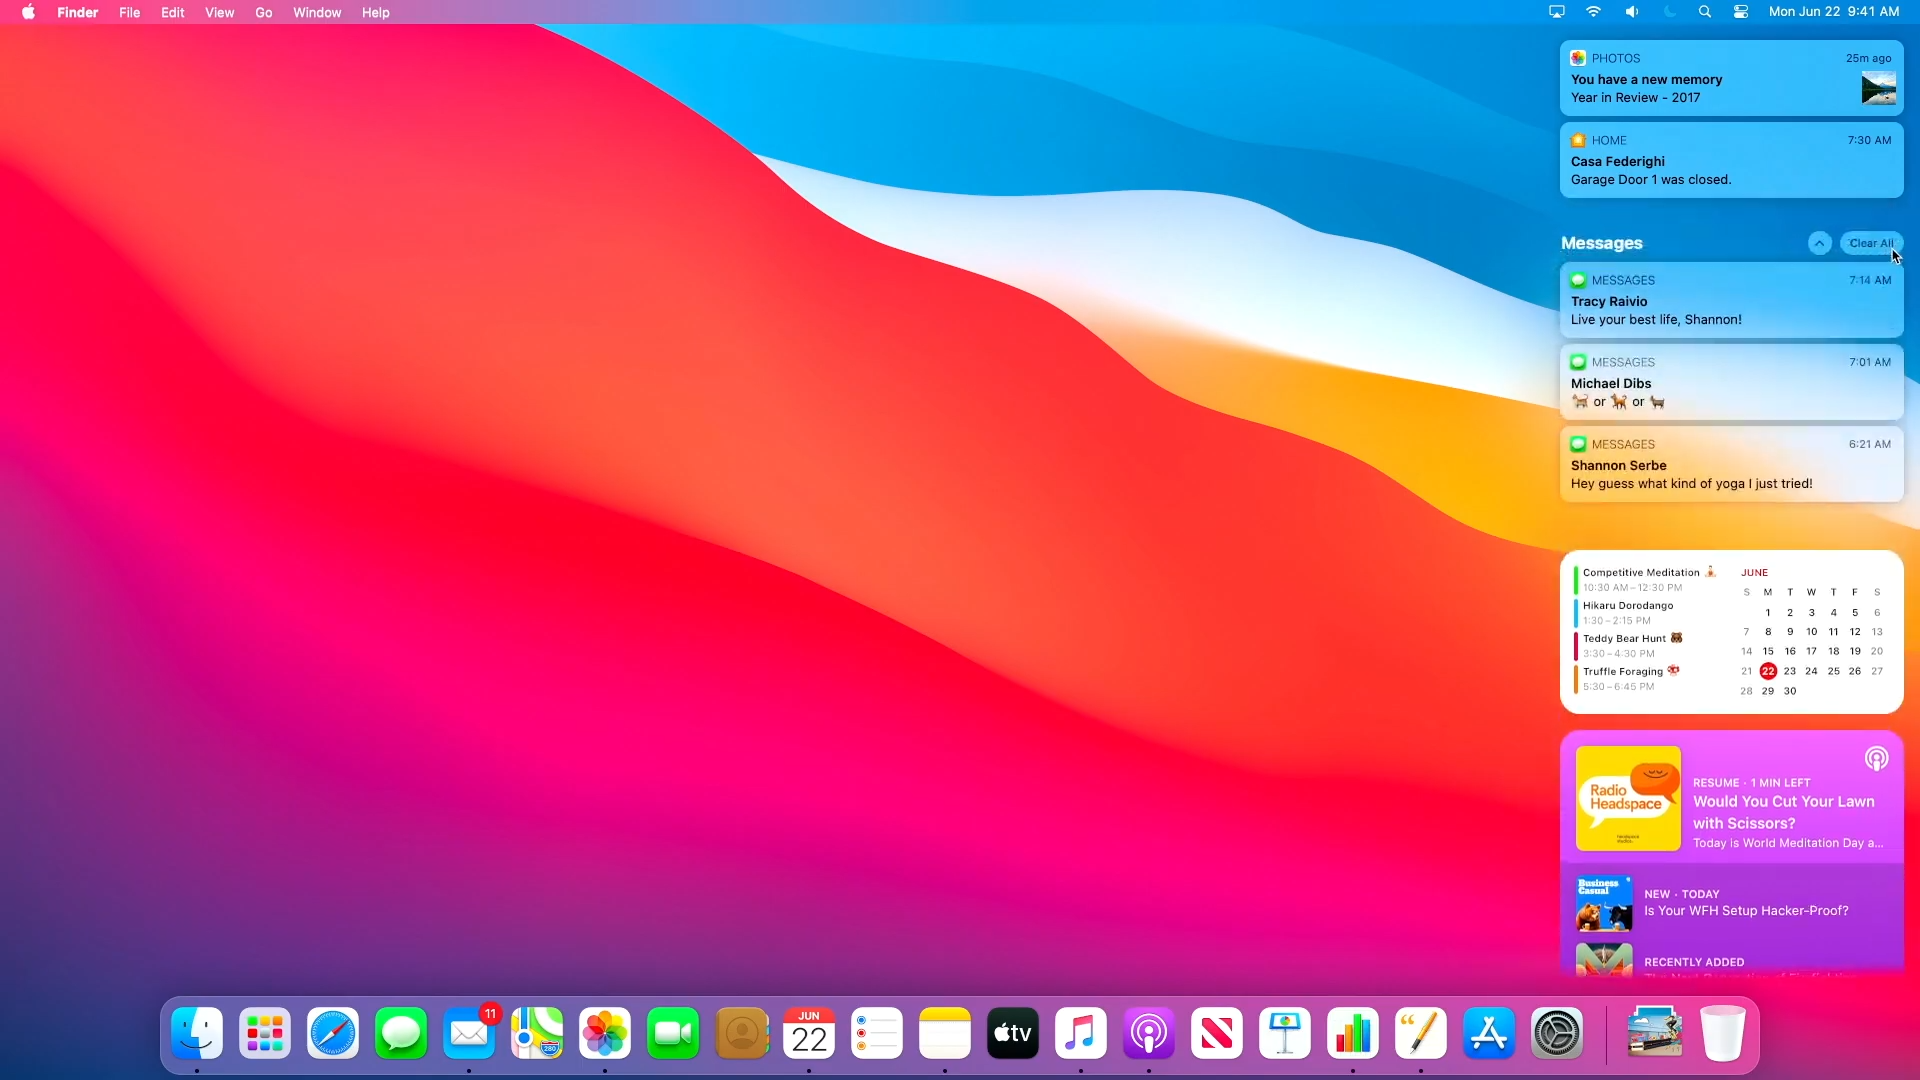 Apple представила macOS 10.16 с новым дизайном и переработанными приложениями